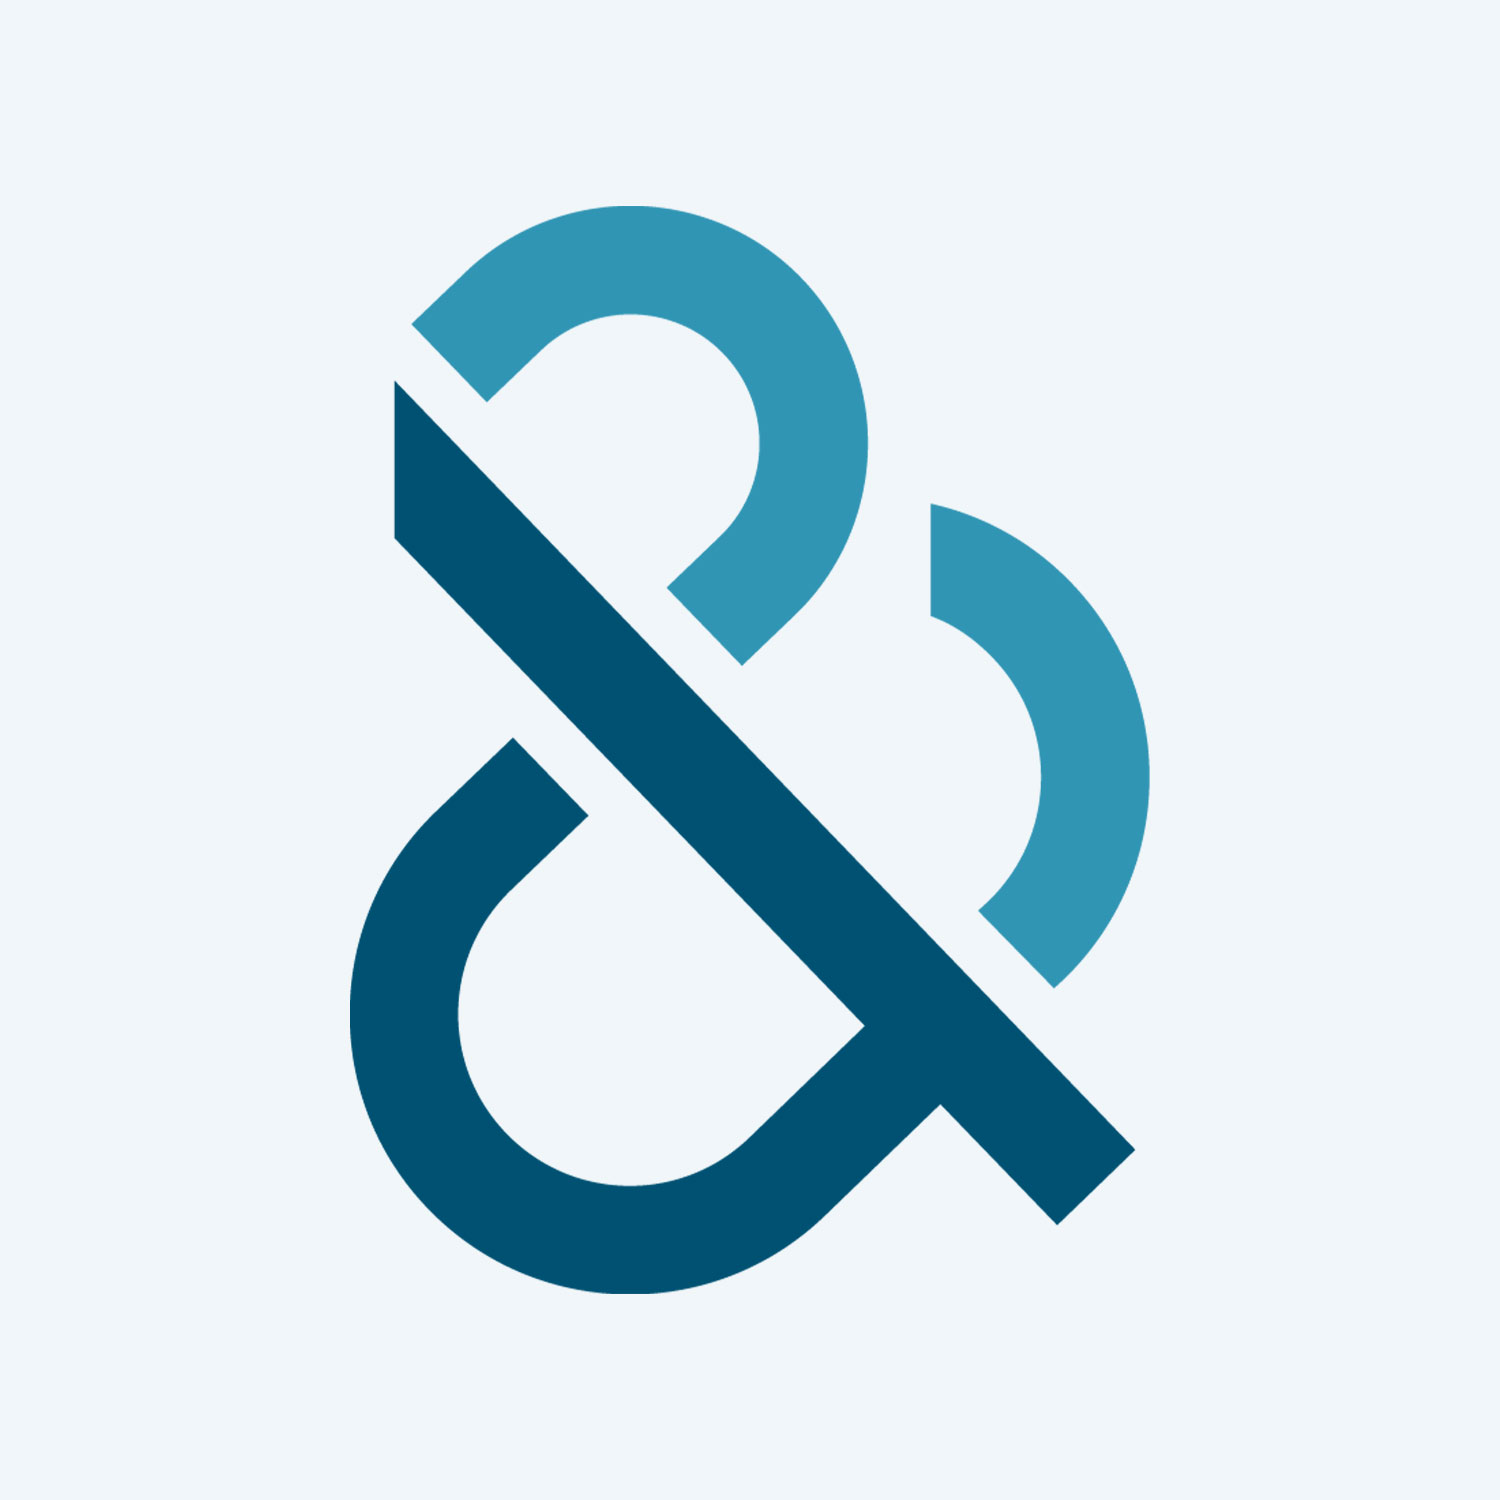 d&b-logo